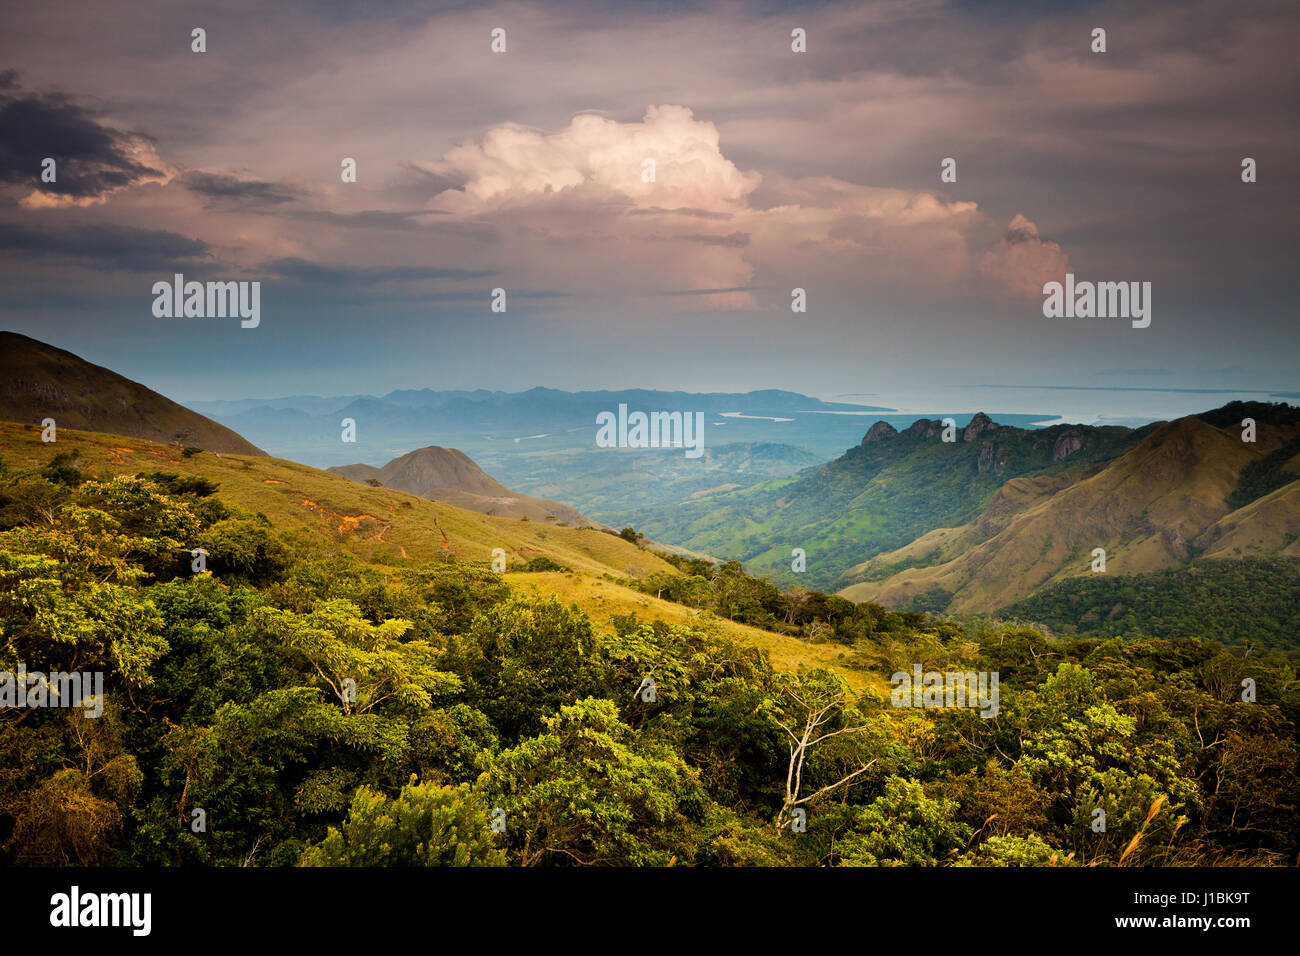 Panamalandschaft mit Abendlicht und Gewitterwolke in den Bergen des Altos de Campana Nationalparks, Republik Panama, Mittelamerika. Stockfoto